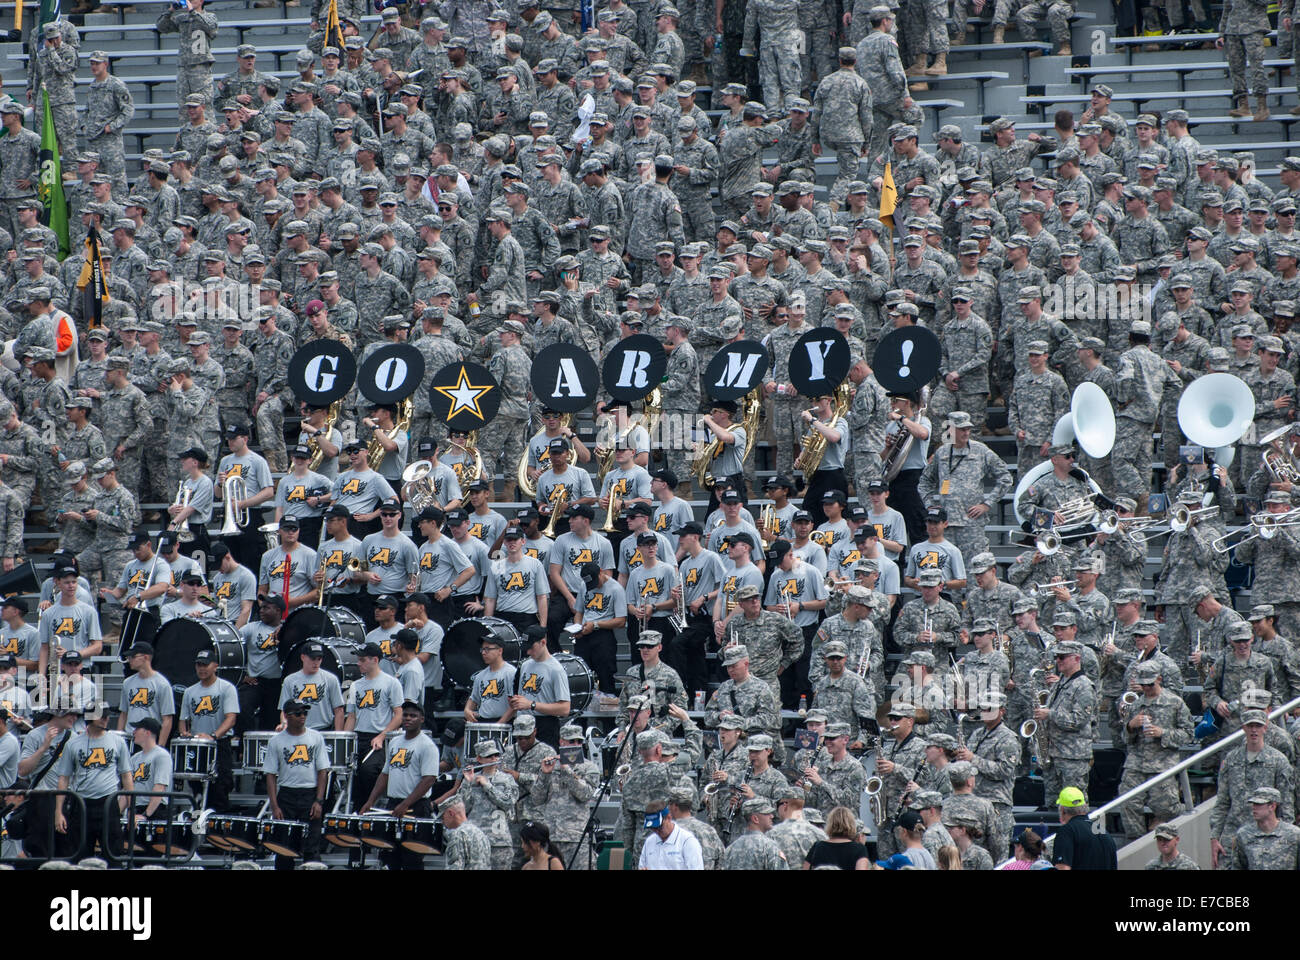 Una academia militar de los Estados Unidos partido de fútbol jugado en Mitchi Stadium en West Point, NY Foto de stock